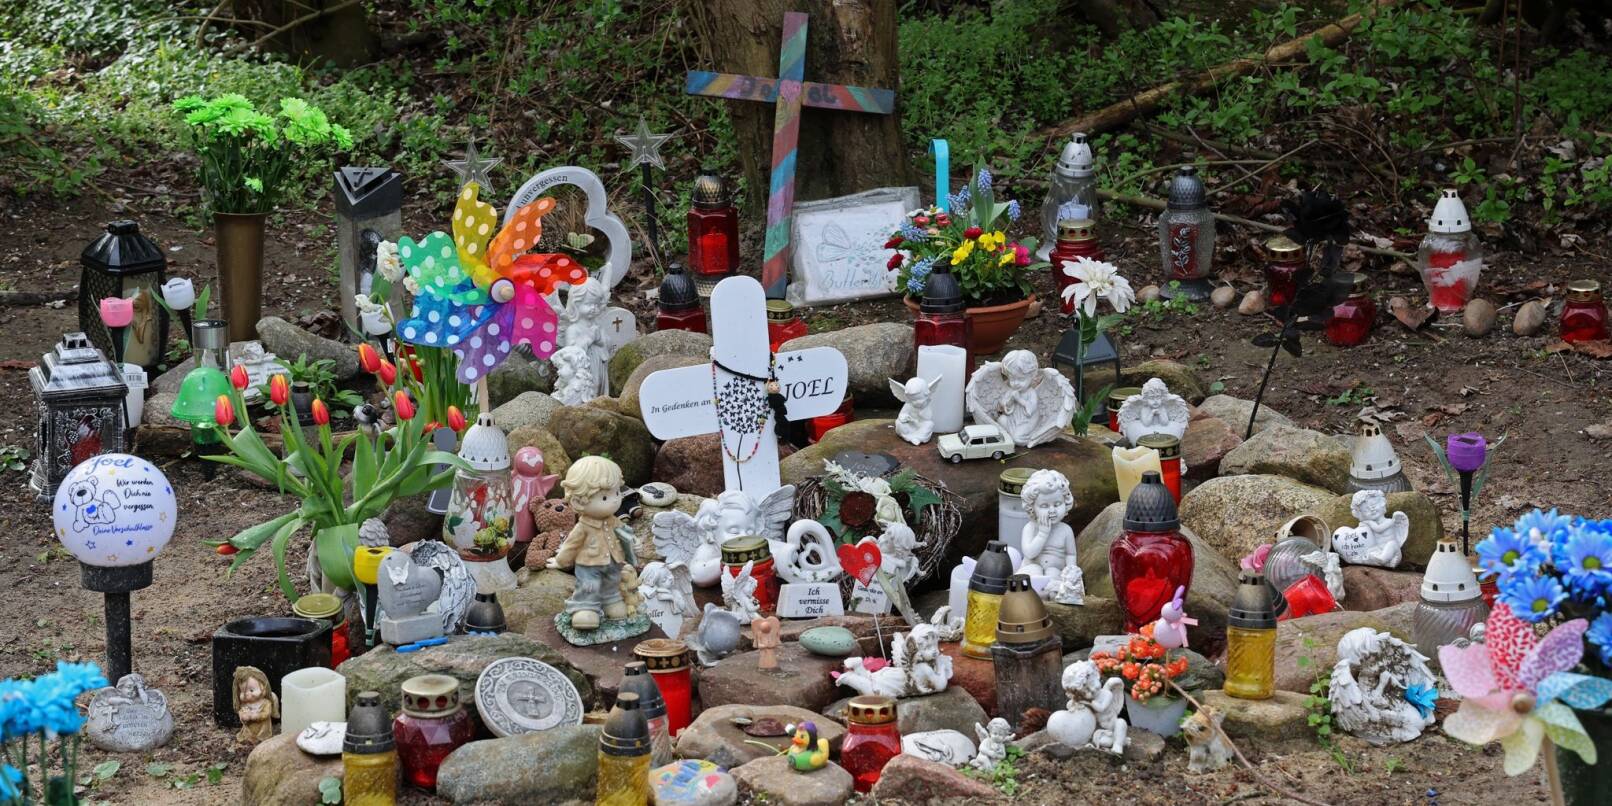 Kreuze, Figuren, Kerzen und Blumen stehen in Pragsdorf an der Stelle, wo die Leiche des kleinen Joel gefunden wurde.